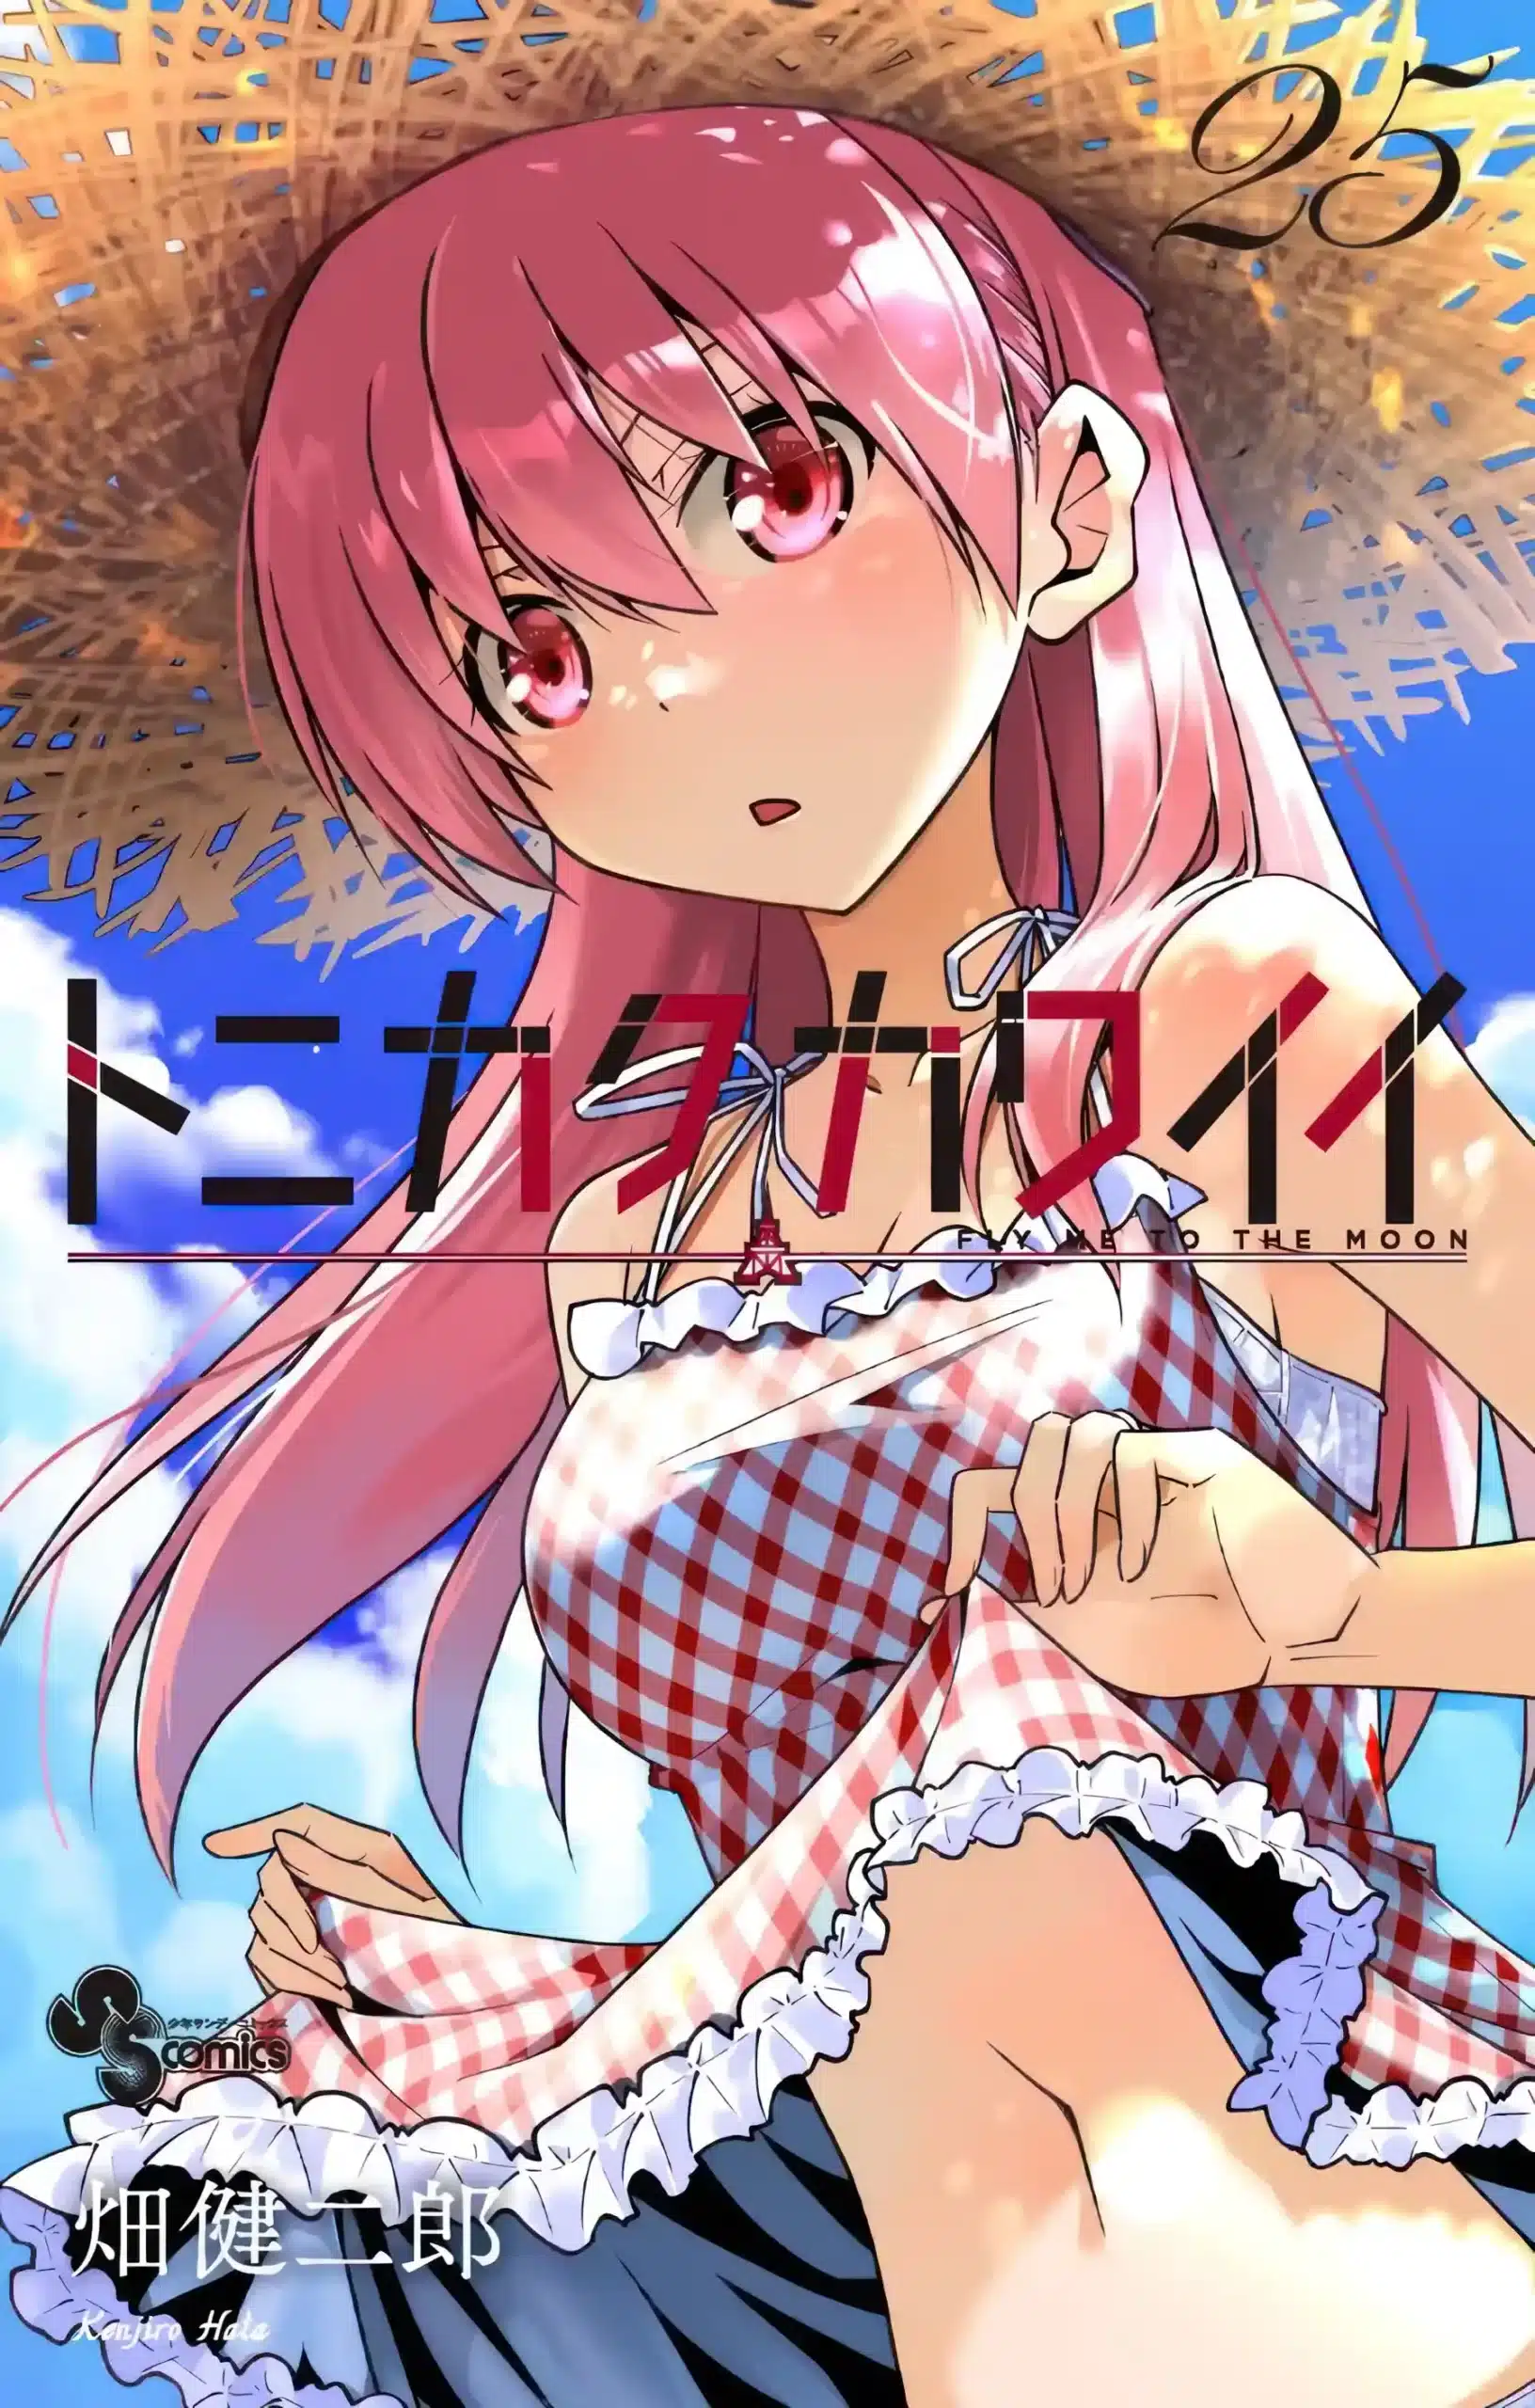 Tonikaku Kawaii Manga Vol 25 979X1536 Ind Scaled